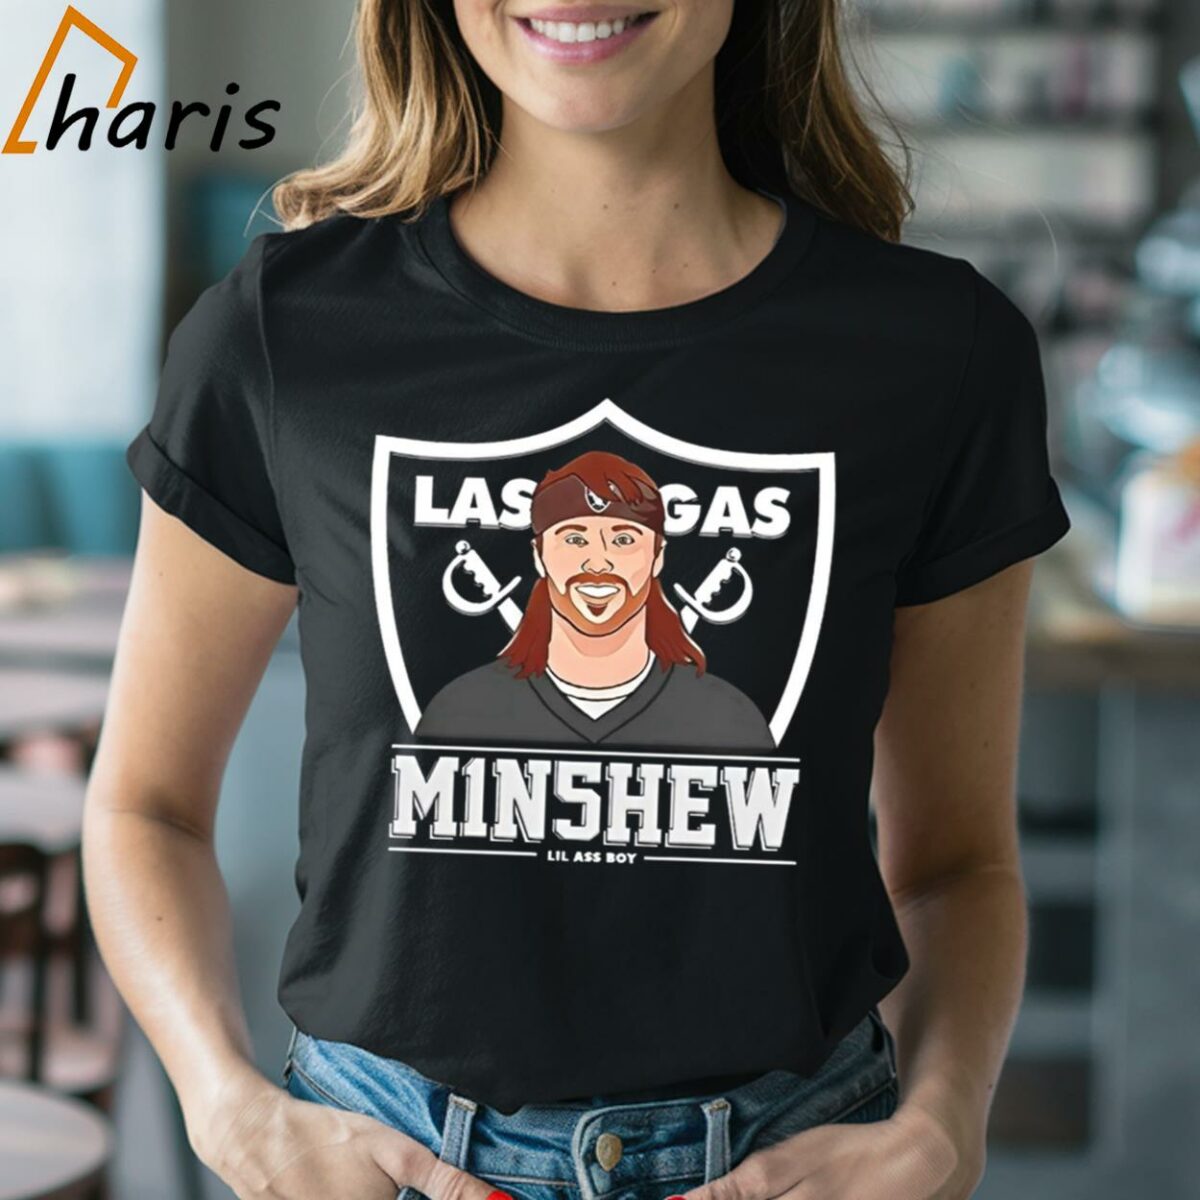 Las Vegas Raiders Gardner Minshew Lil Ass Boy Cartoon Shirt 2 Shirt